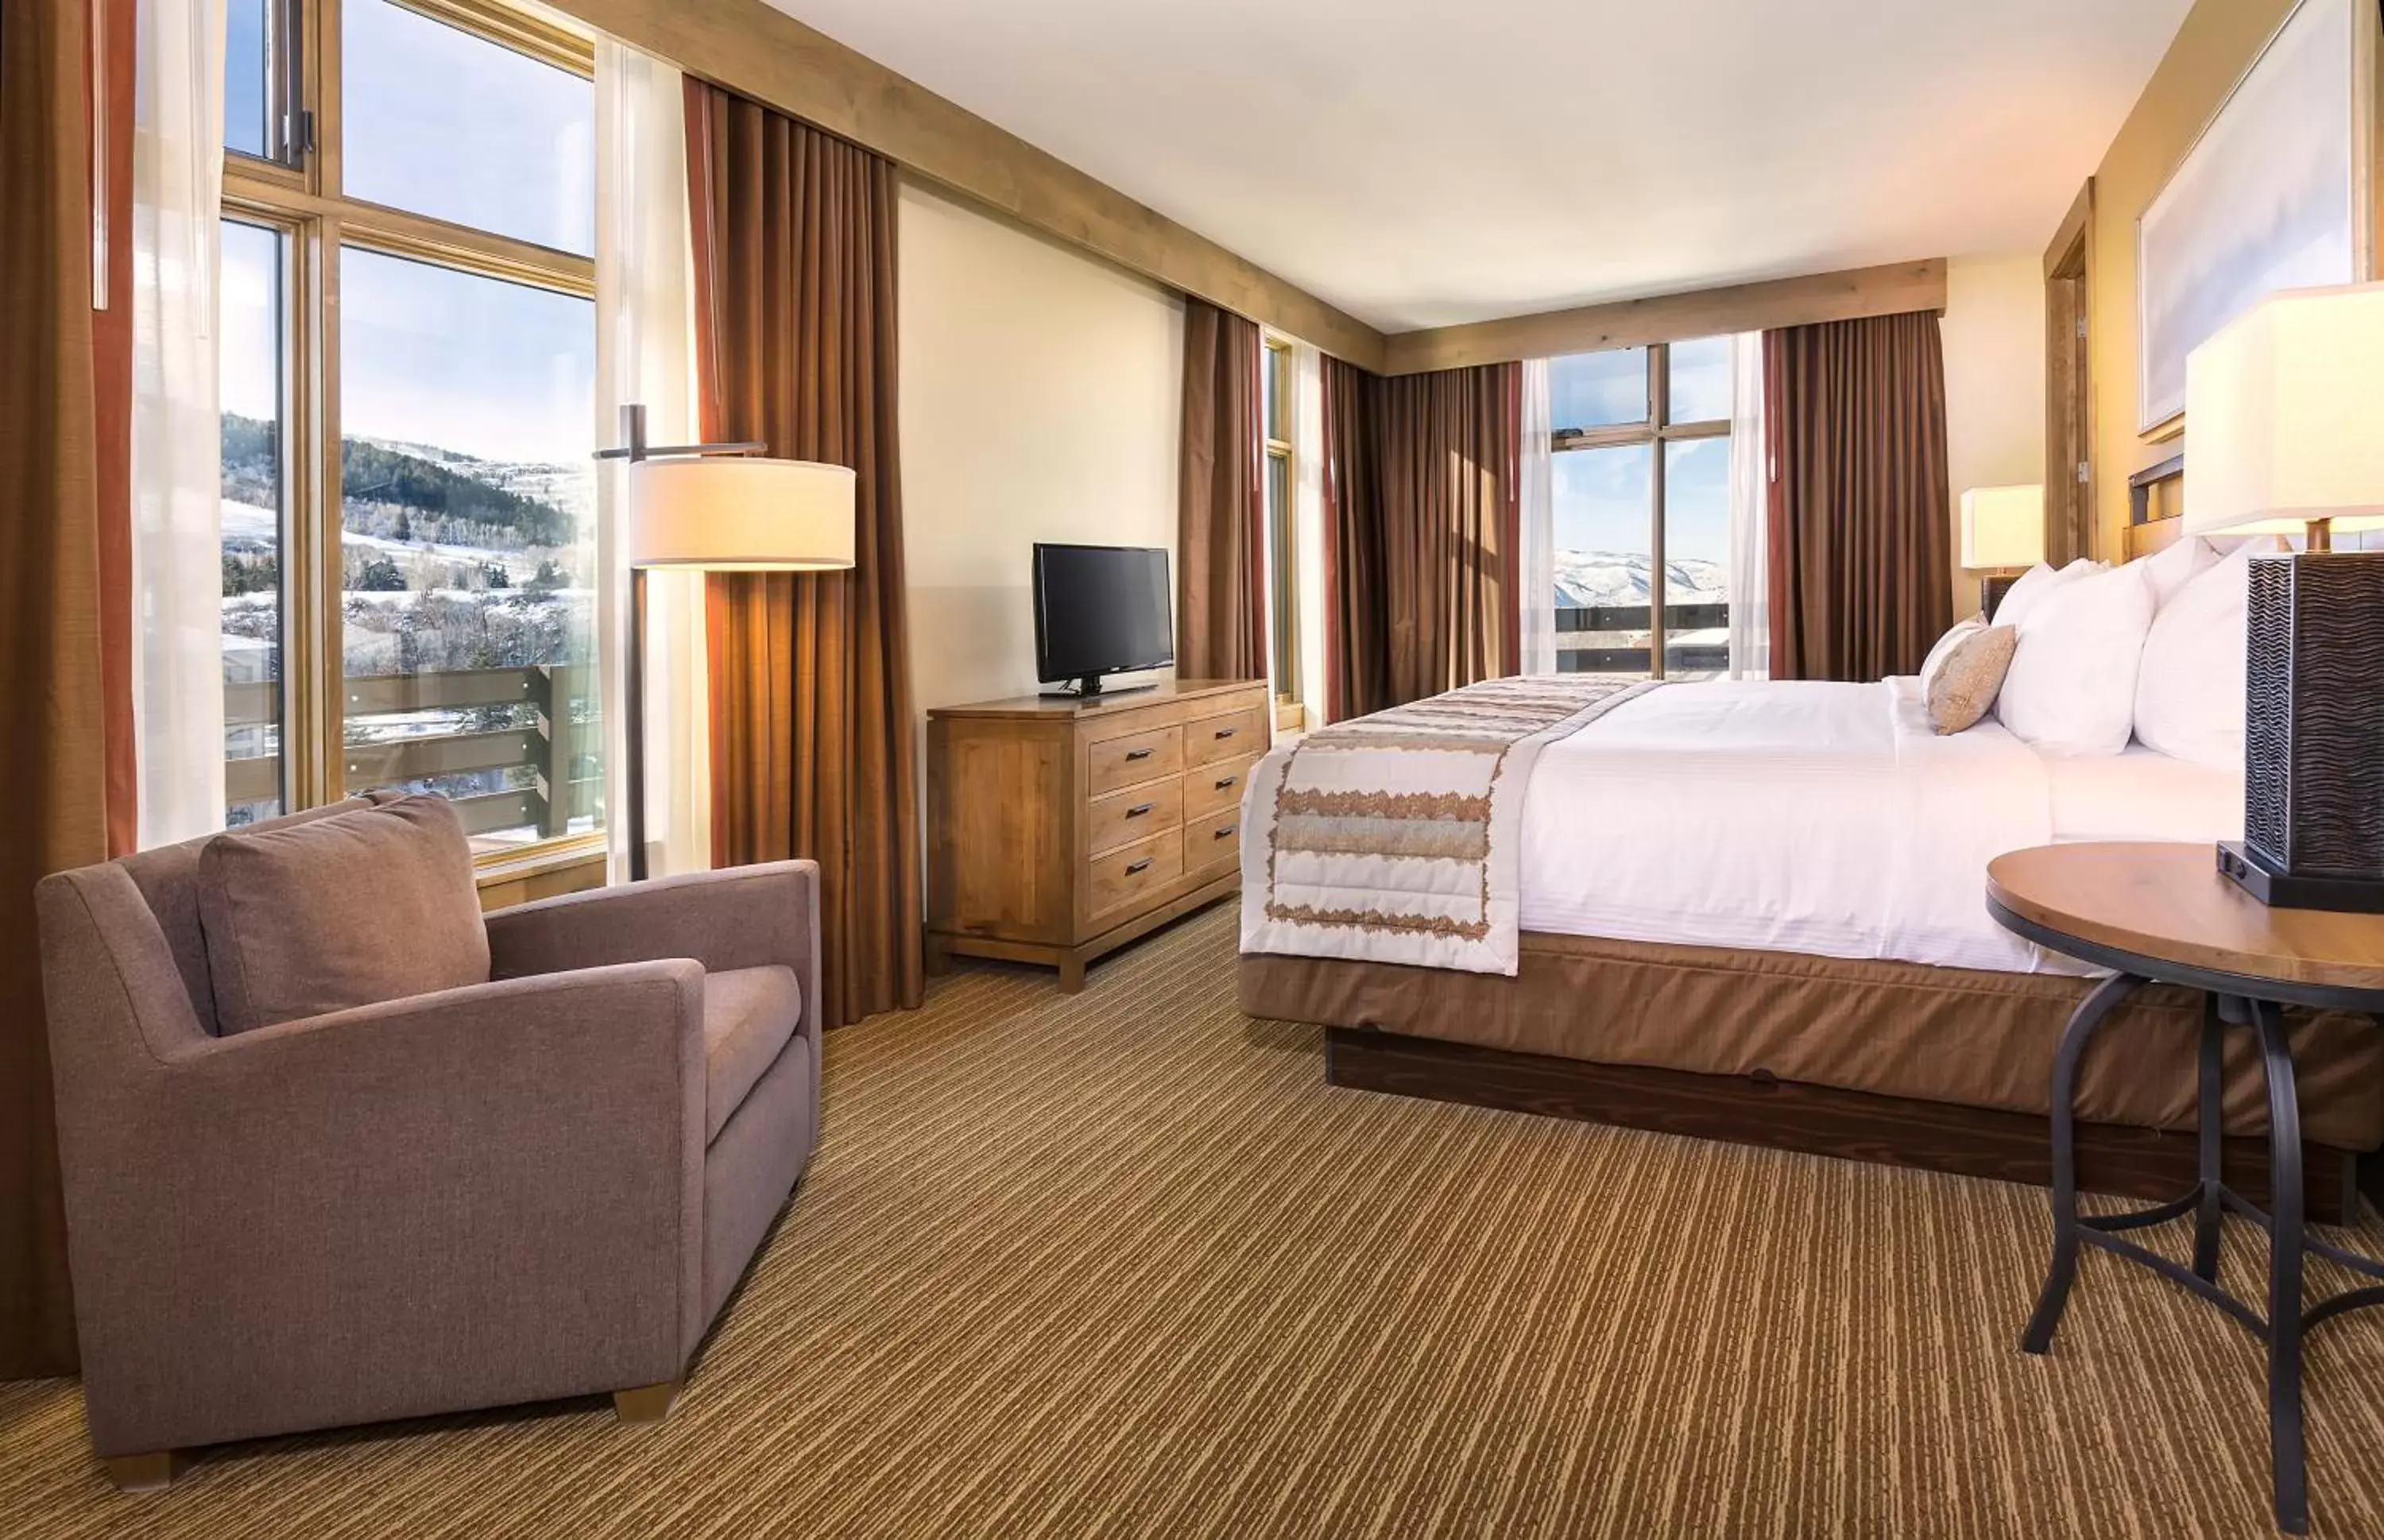 Two-Bedroom Presidential Suite in Club Wyndham Resort at Avon